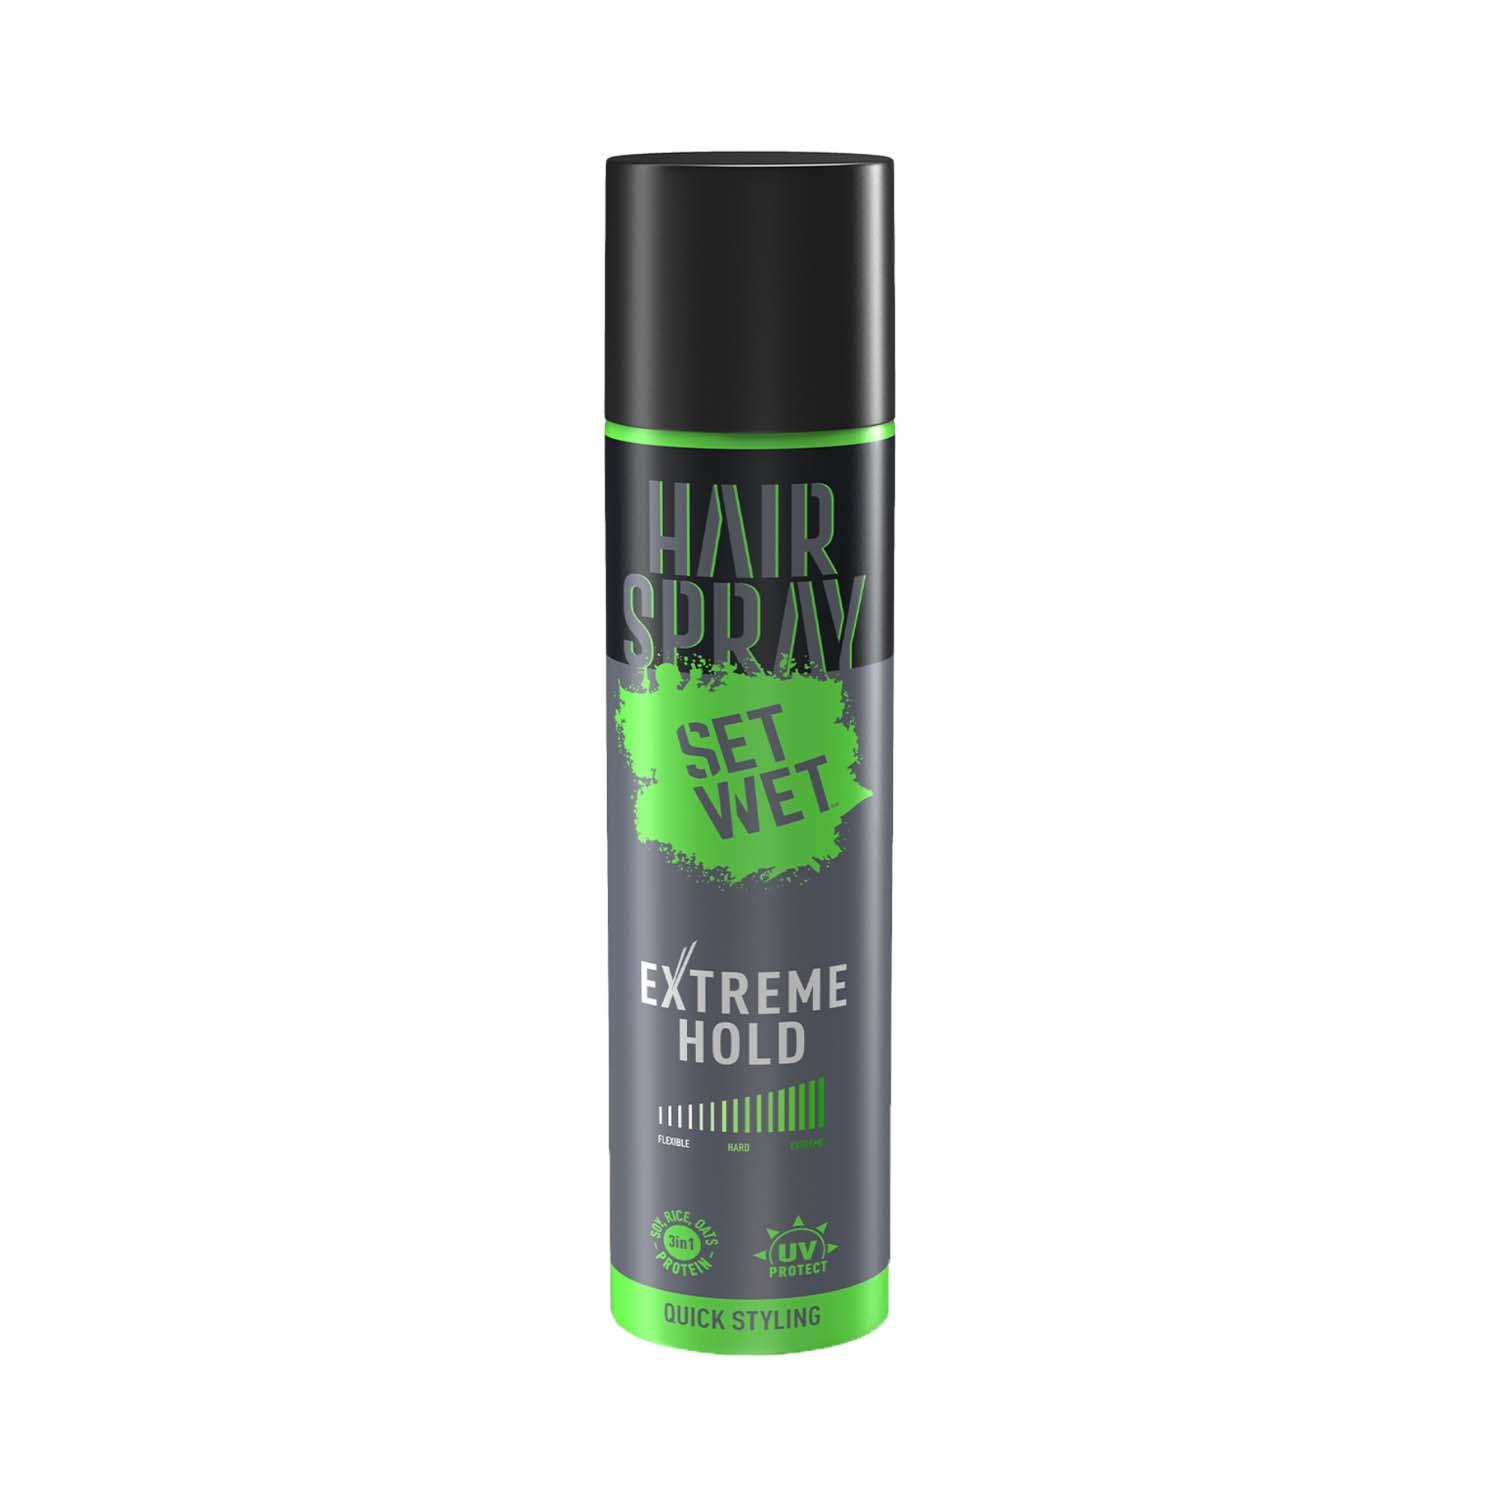 Set Wet | Set Wet Extreme Hold Hair Spray for Men (200 ml)